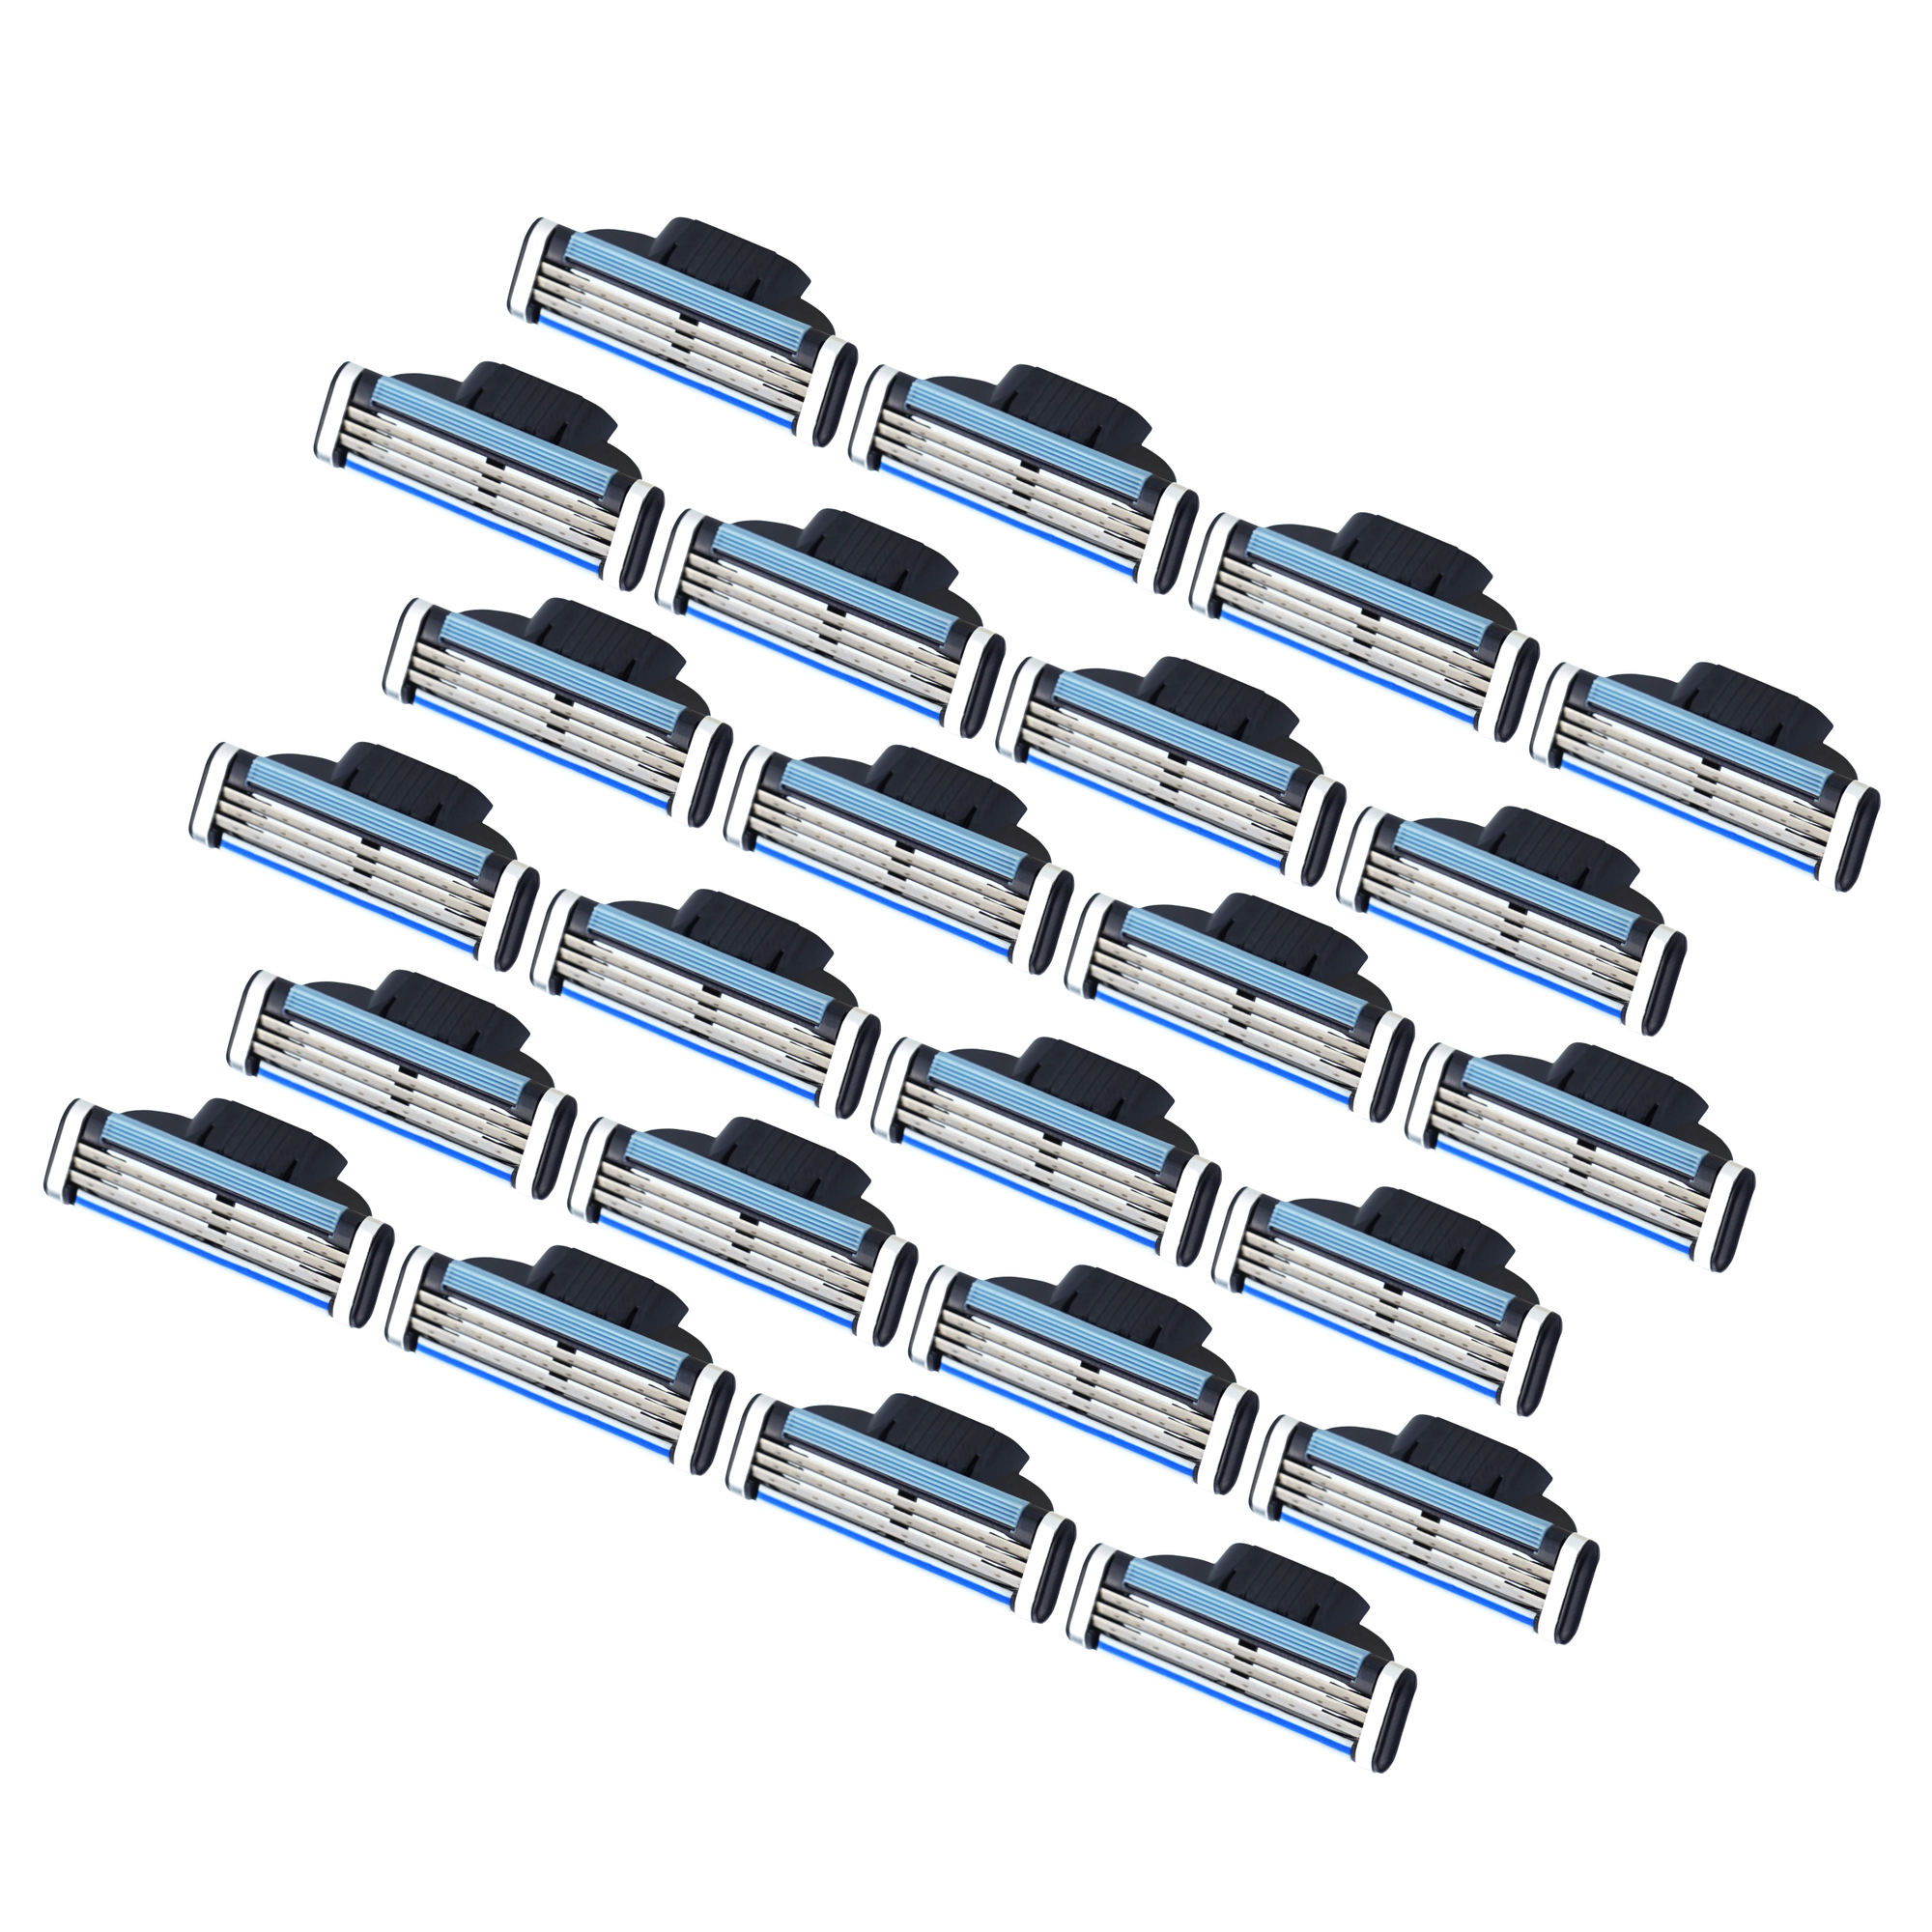 Сменные кассеты Men's Mac 3 для бритья мужские совместимы с Gillette Mach 3, 24 шт по 3 лезвия